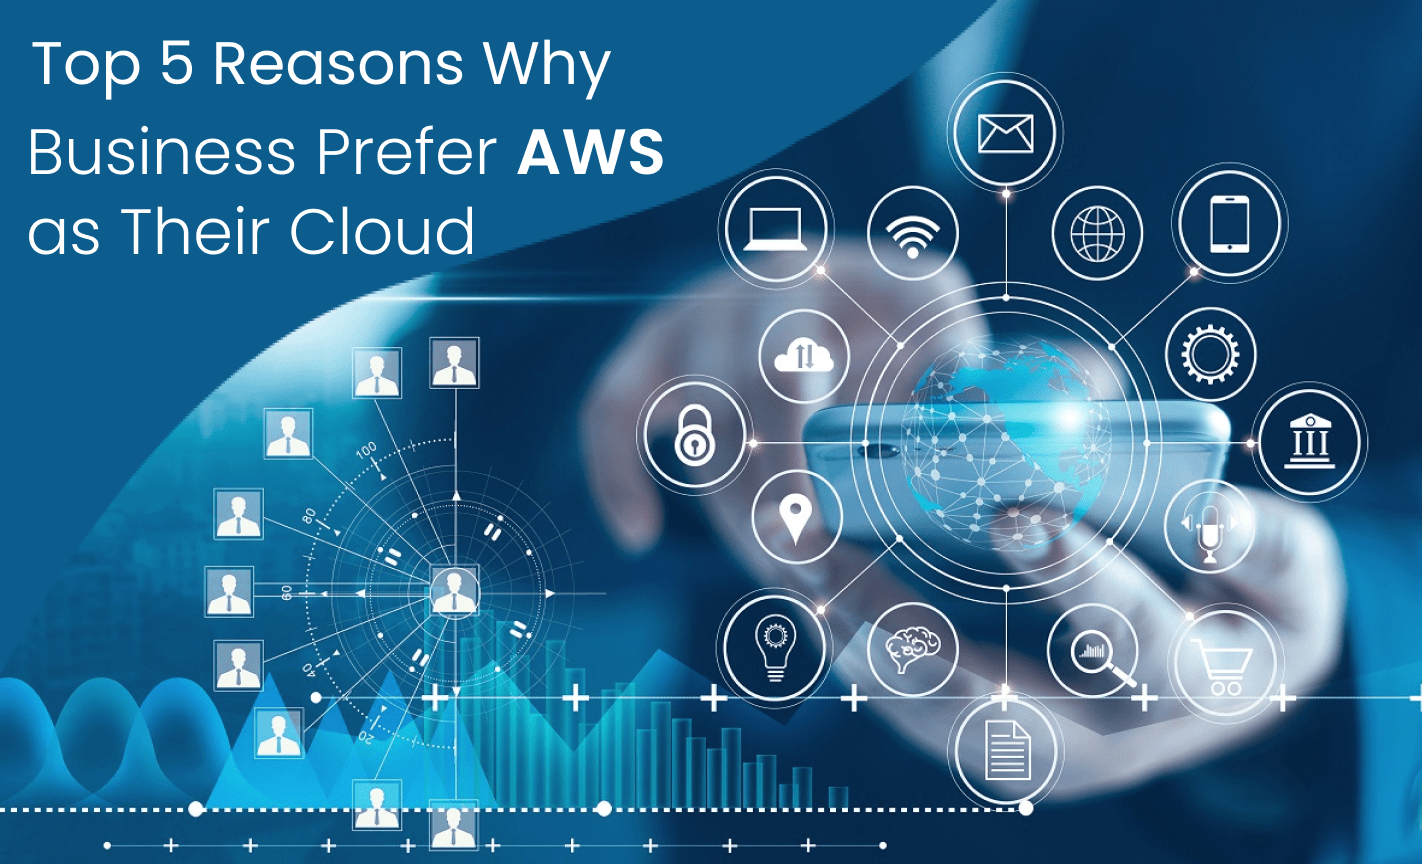 AWS as Their Cloud